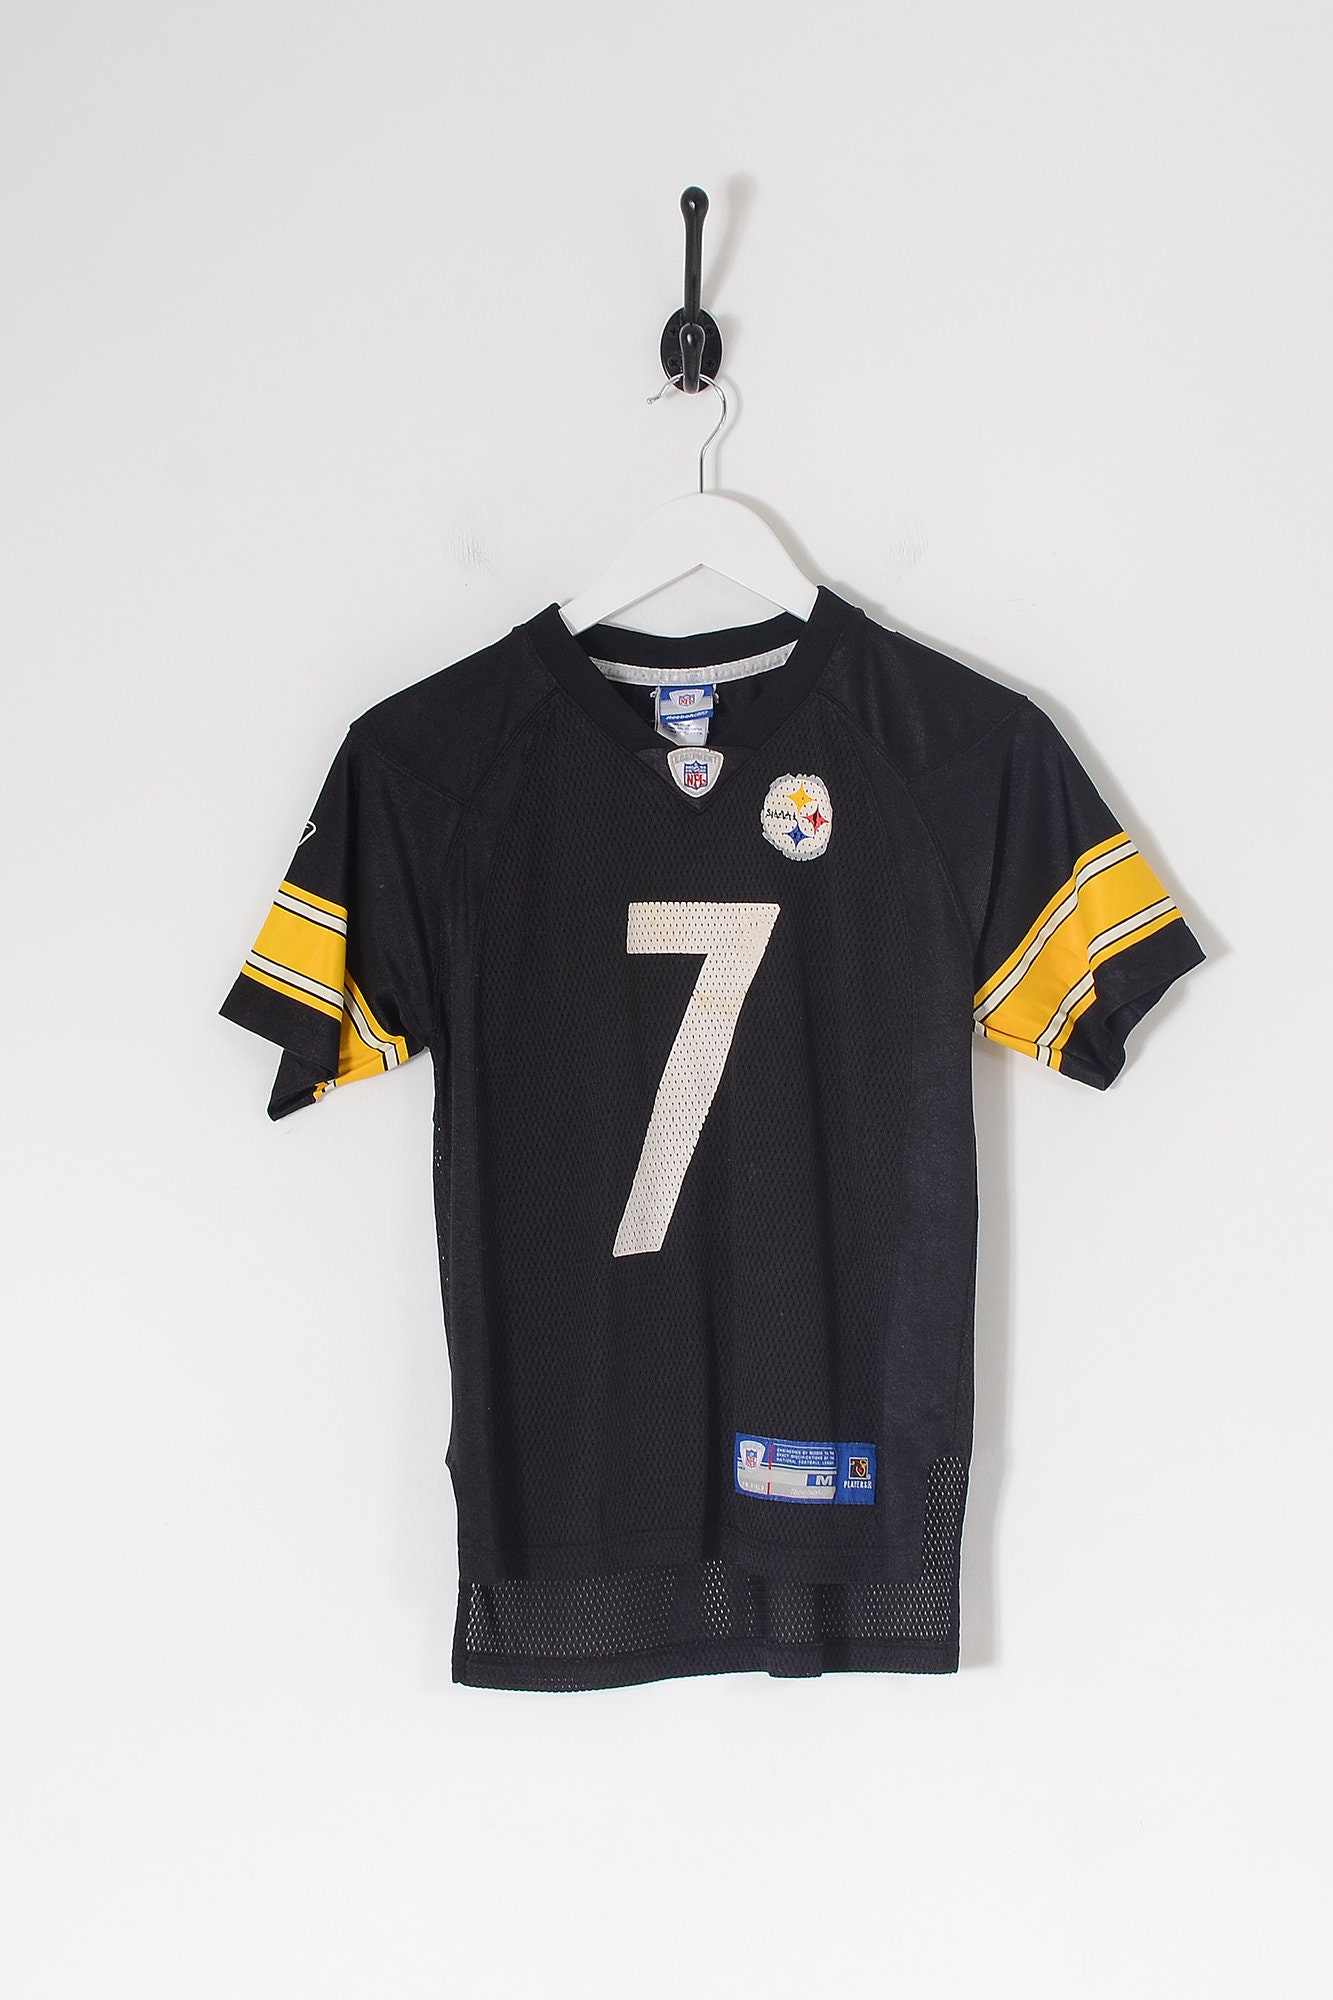 Vintage REEBOK NFL Pittsburgh Steelers American Football - Etsy